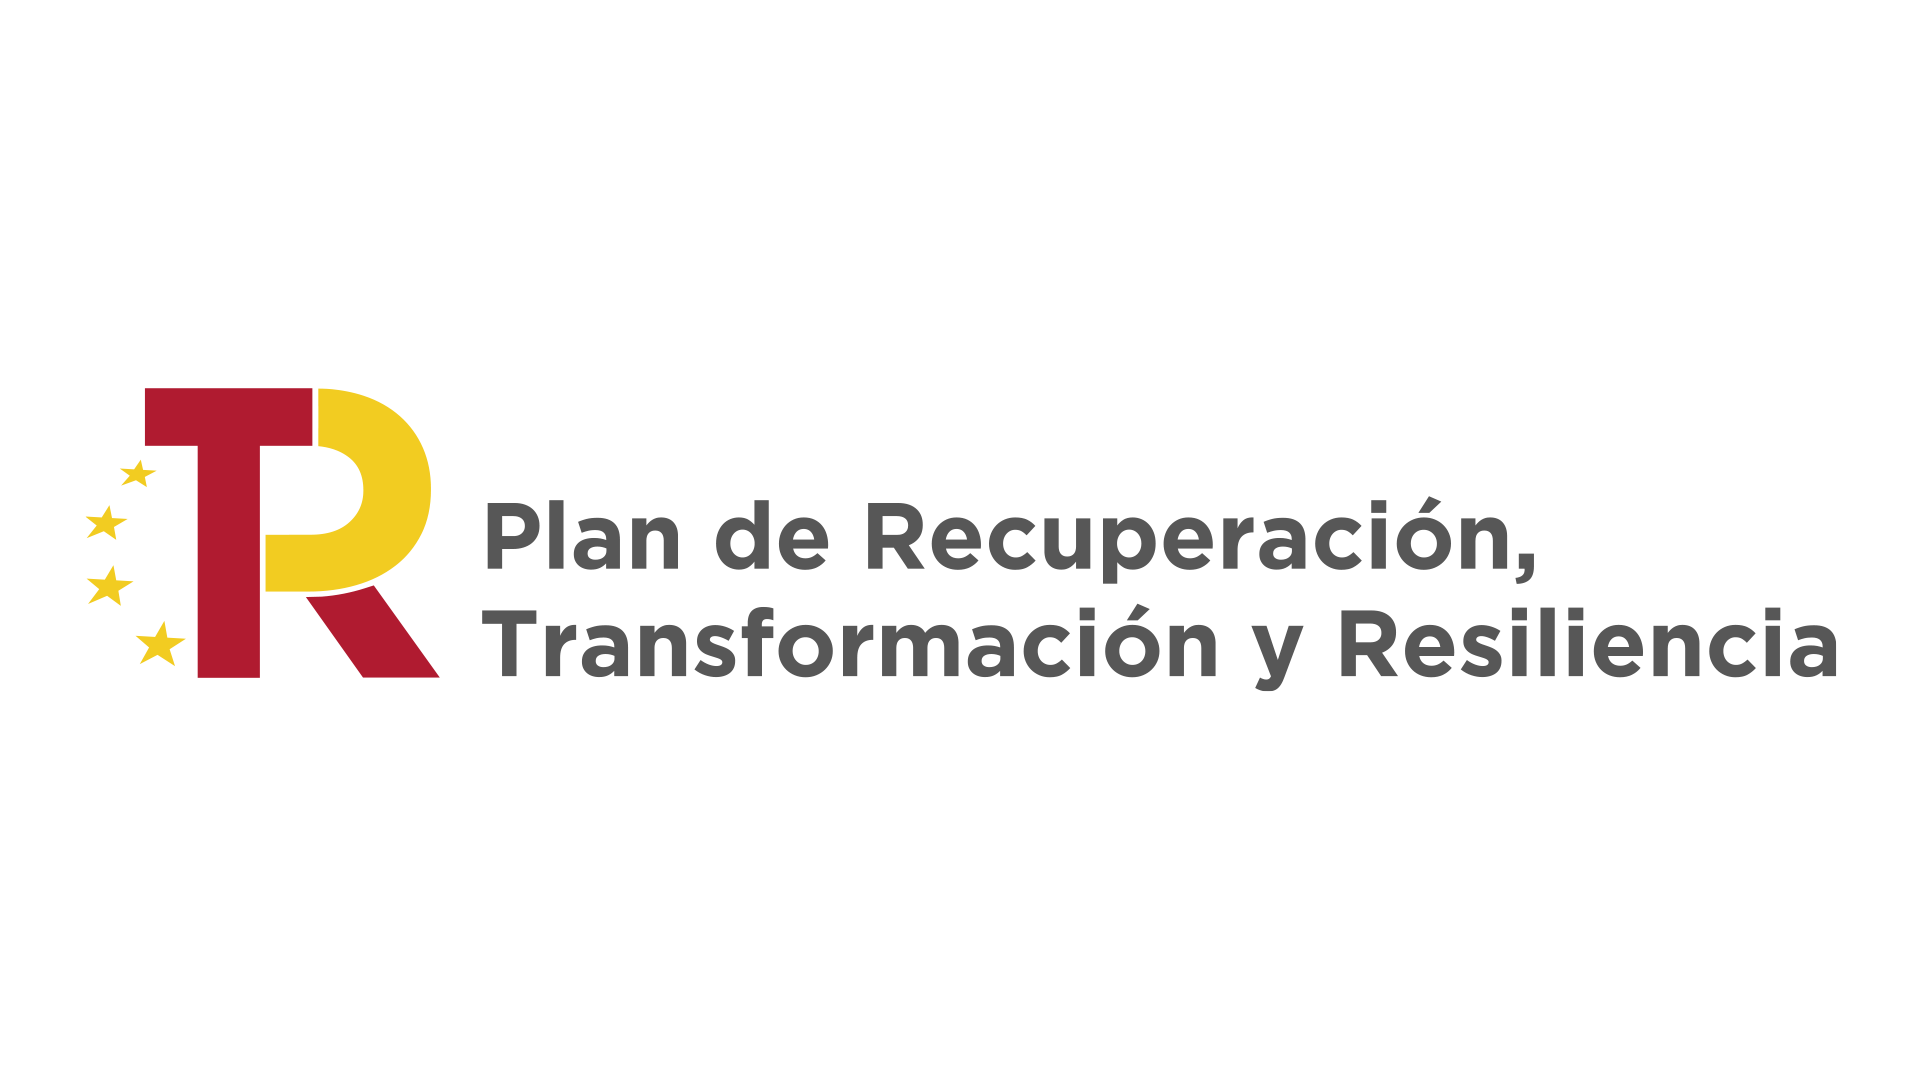 Plan de Recuperación, Transformación y Resiliencia (dos líneas)